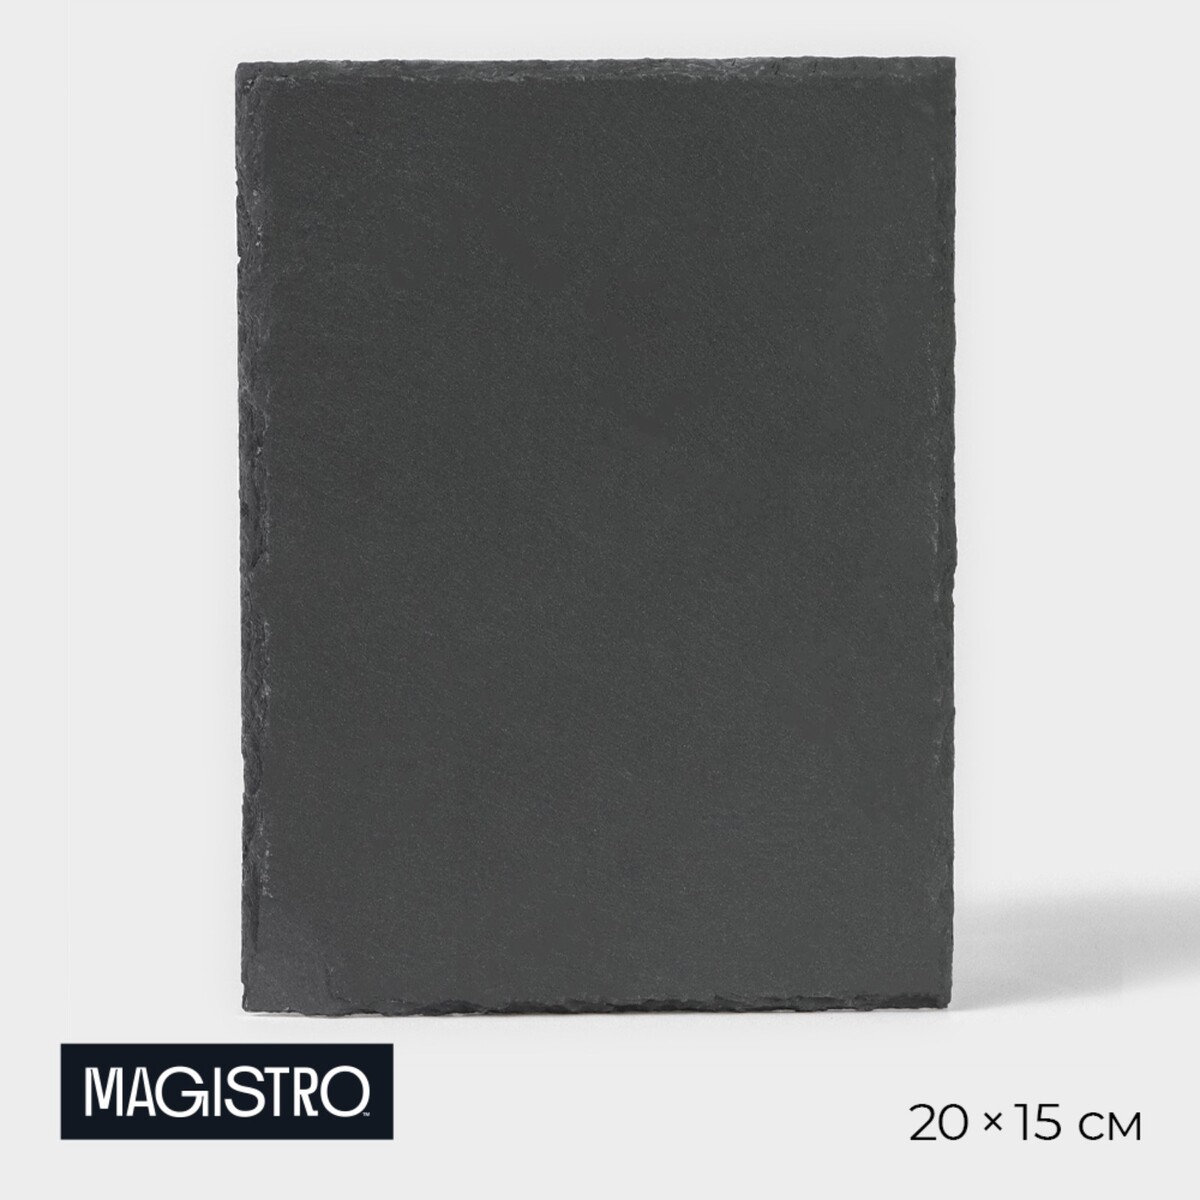 Доска для подачи из сланца magistro valley, 20×15 см доска для подачи из сланца